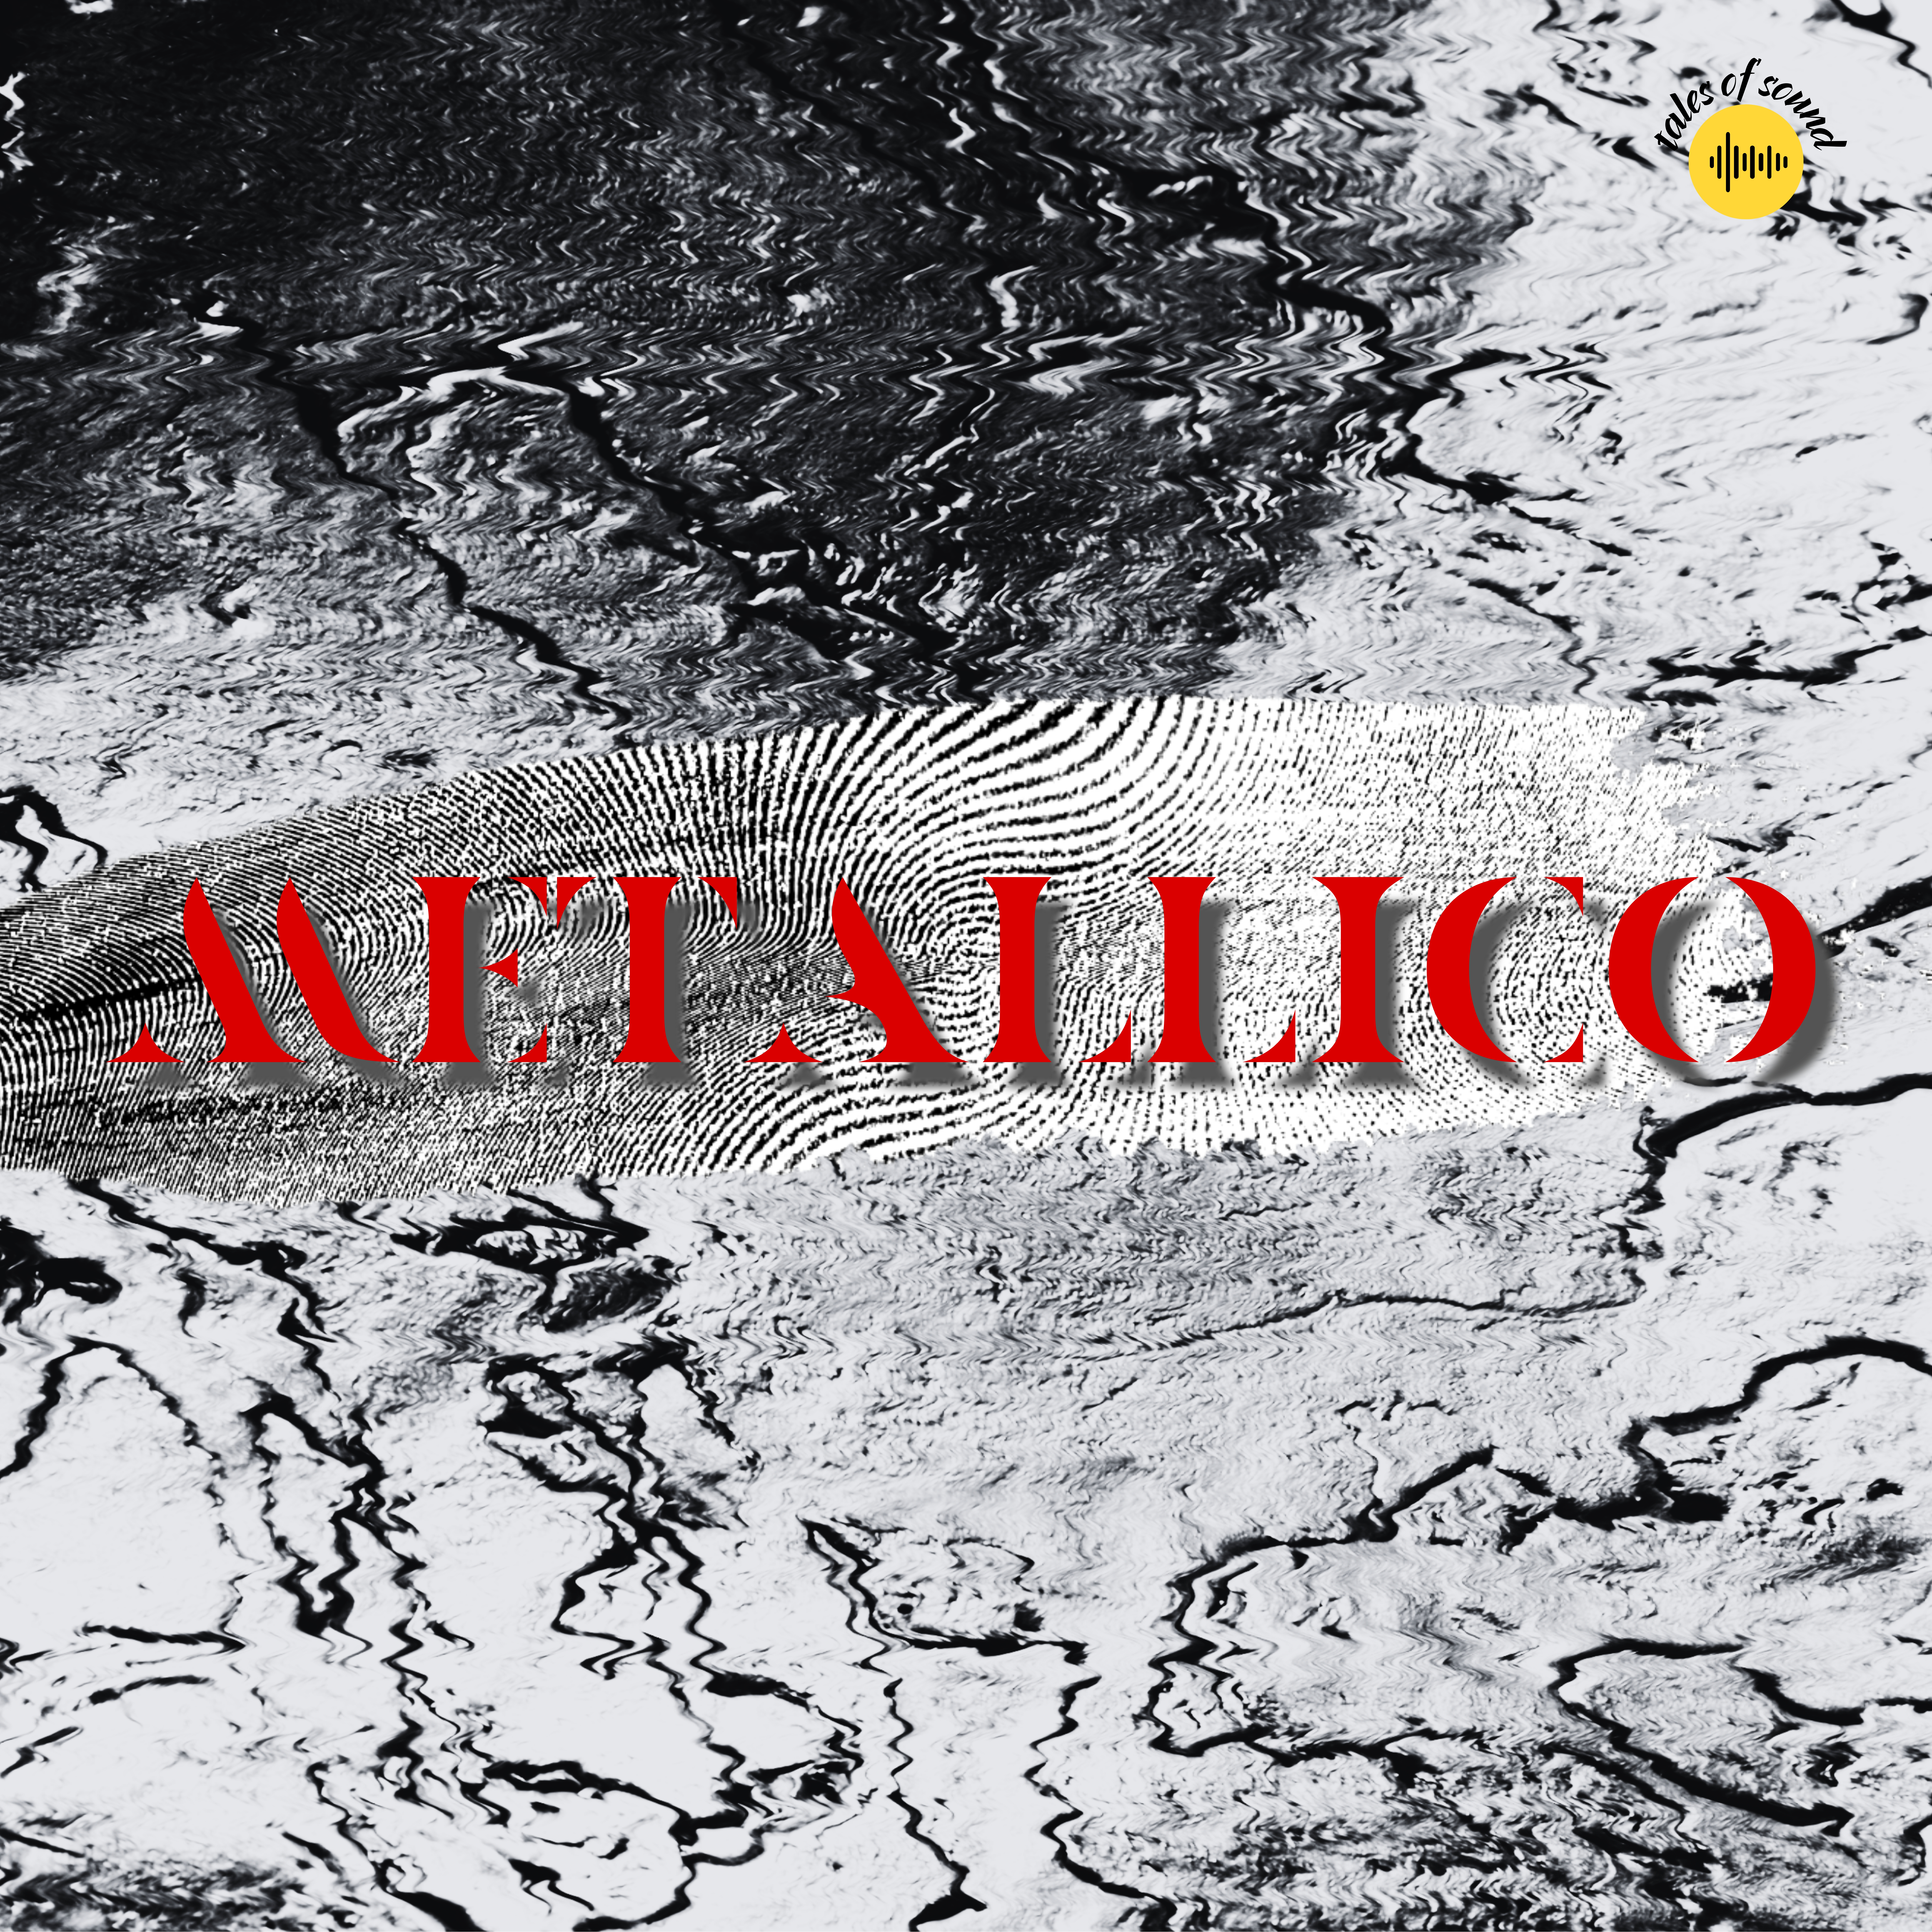 Le pagelle di AlEmy: “METALLICO” il nuovo singolo dei Tales Of Sound